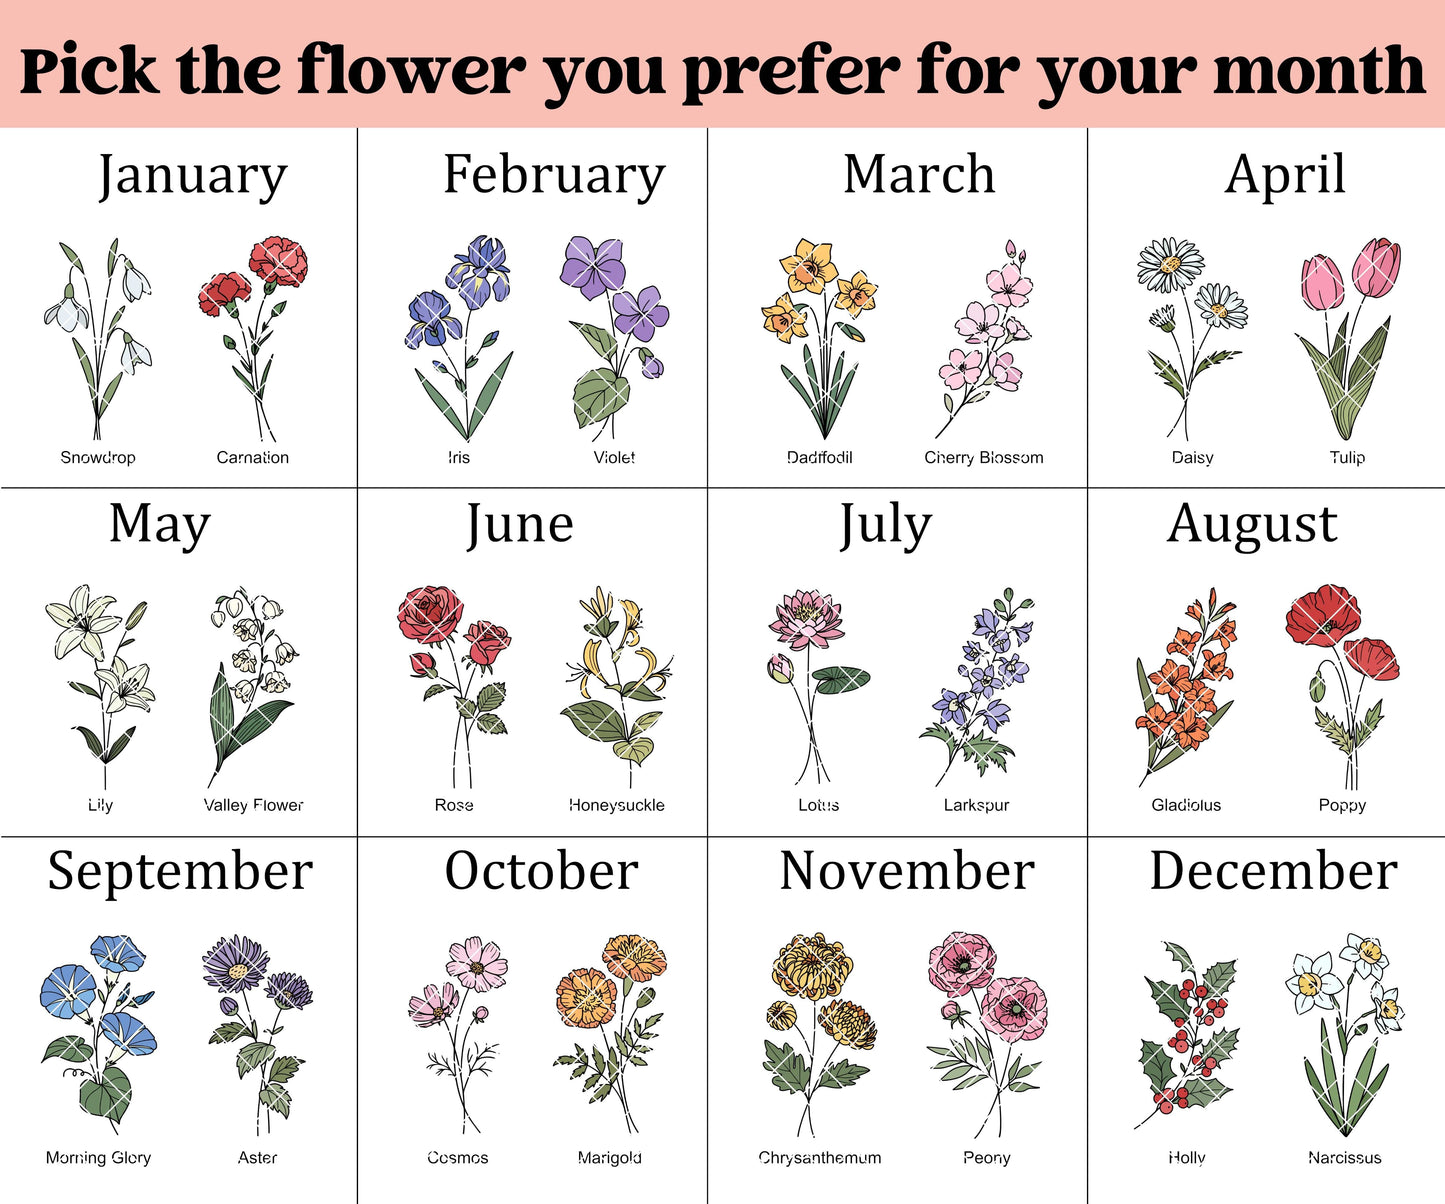 Mums garden, birth month sign, birth flower sign, grandparent gift